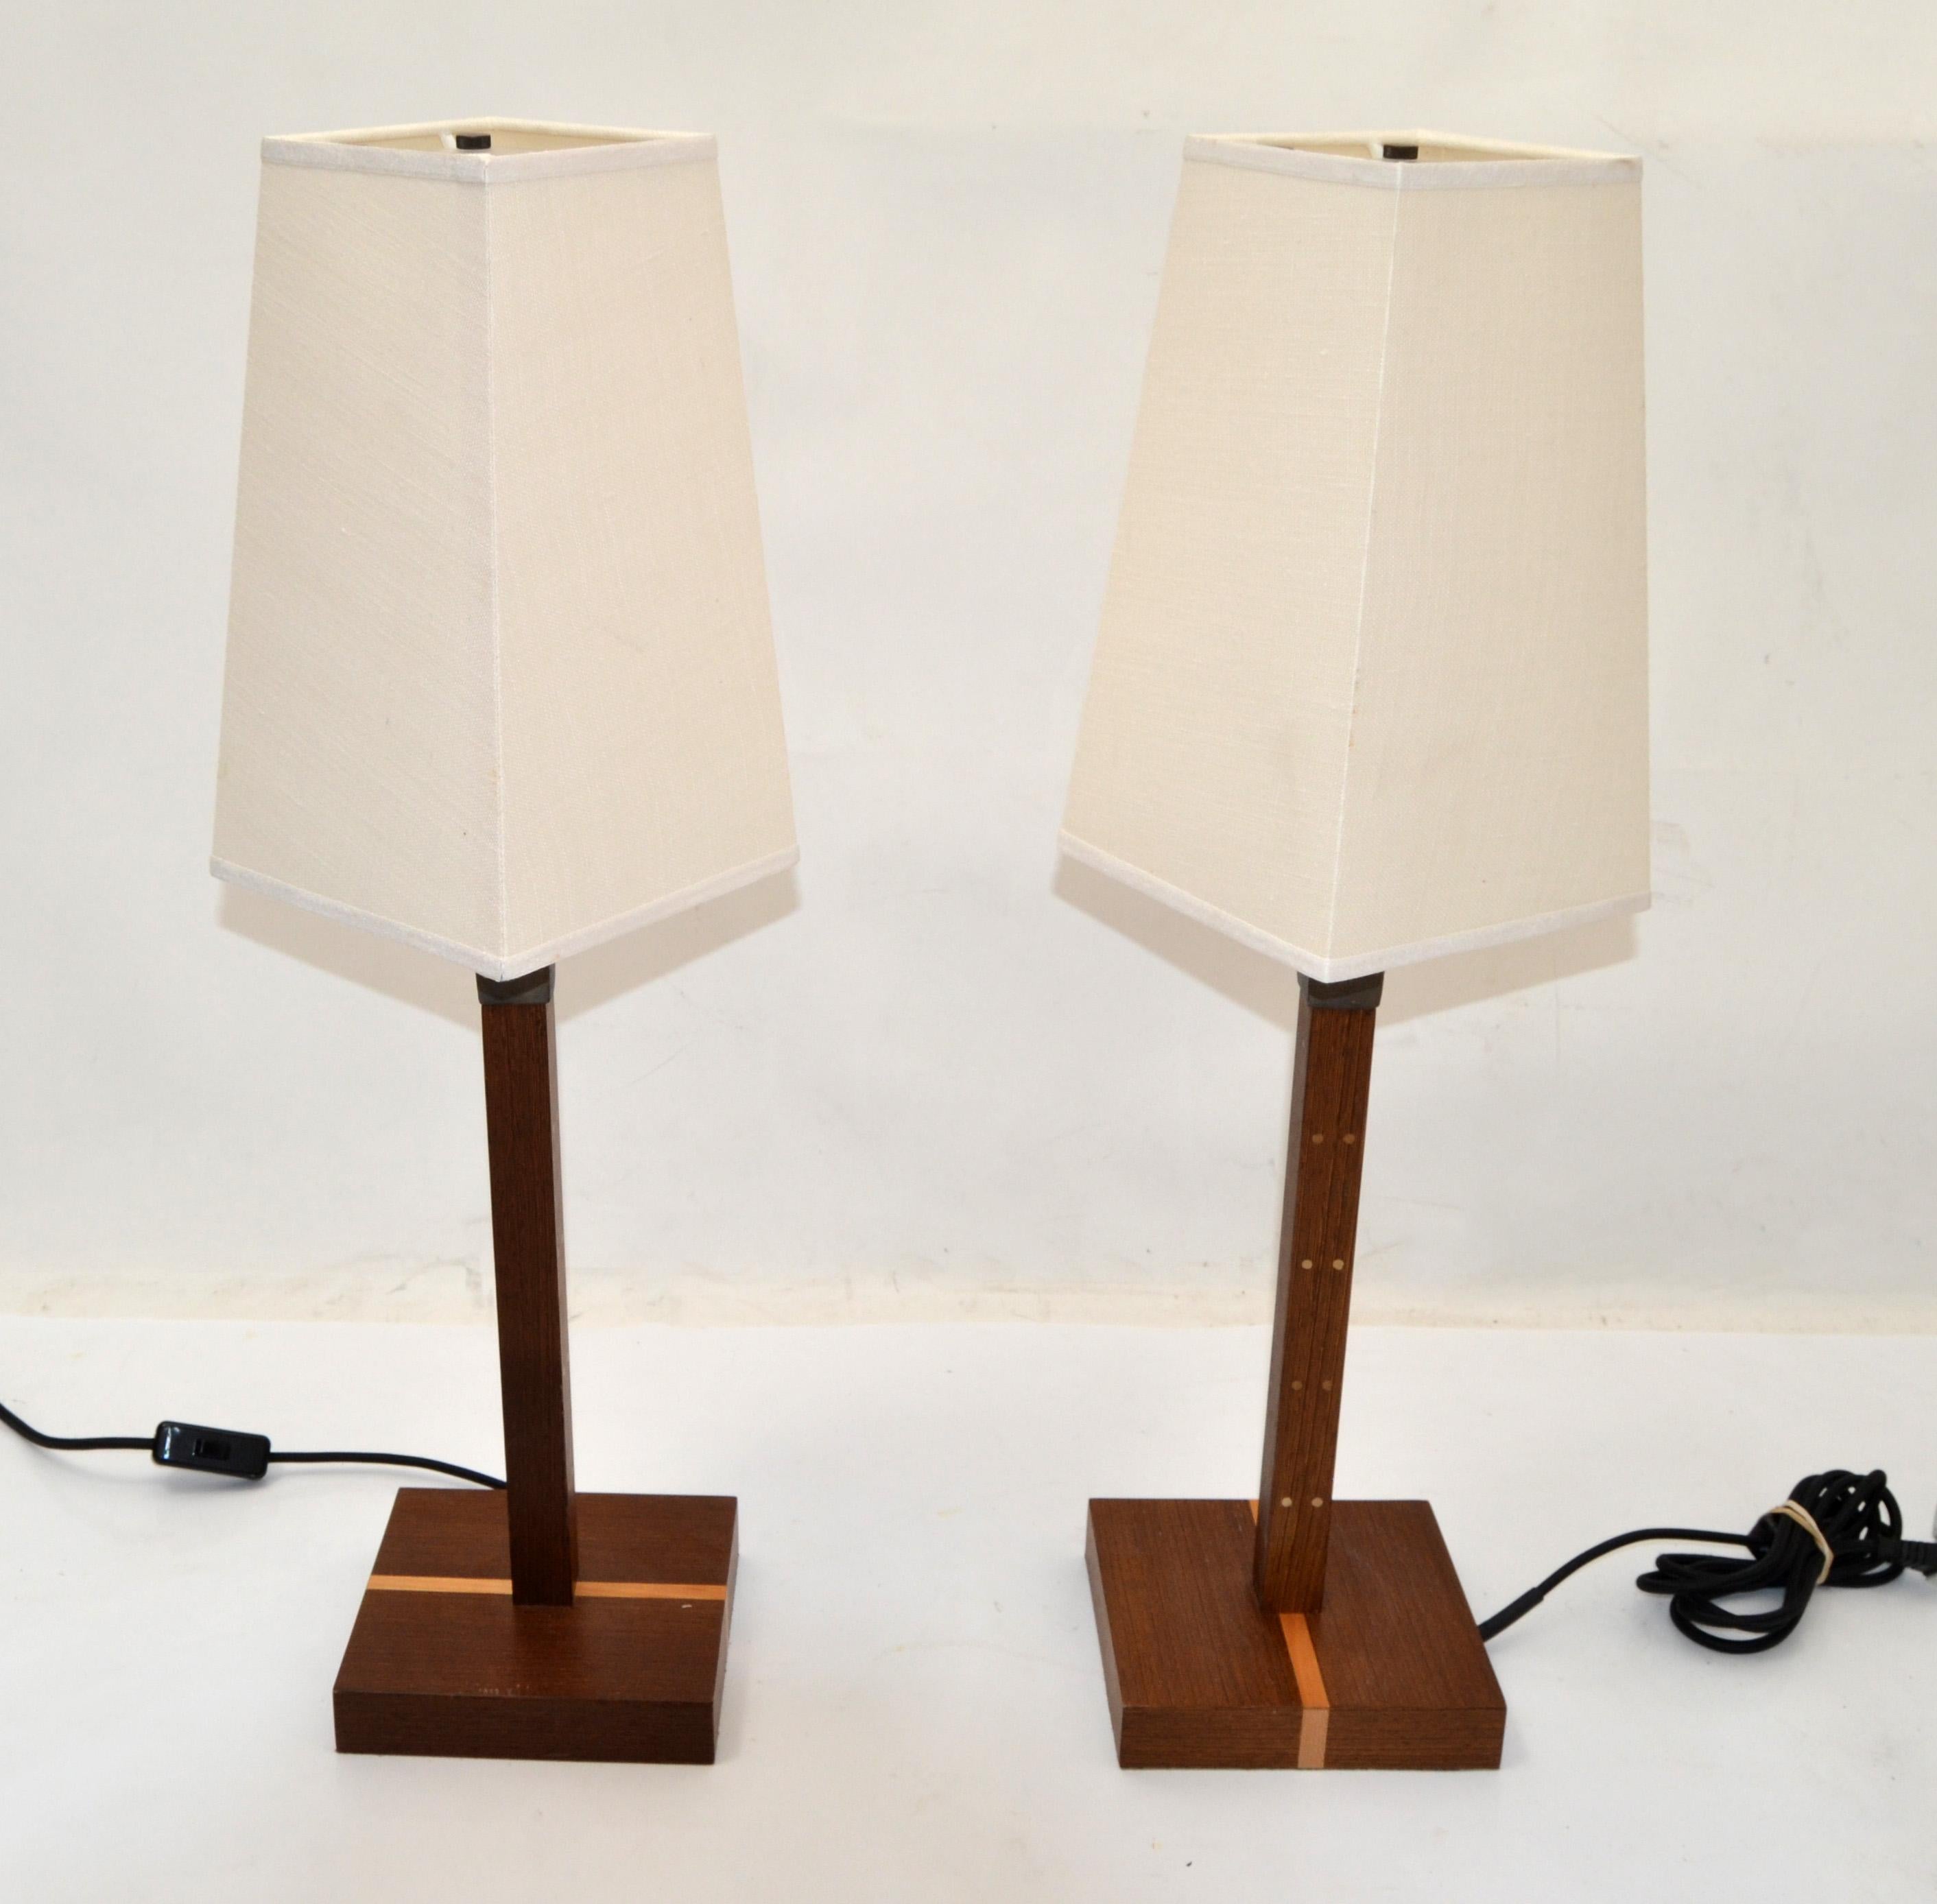 Paar Ida-Lampen, entworfen von Romeo Sozzi um 1990 für Promemoria, hergestellt in Italien.
Cooles Mid-Century Modern Design aus Wengeholz, gehämmerter Bronze, Acryl und gekrönt mit einem Leinenschirm.
US Rewiring mit Schnurschalter, UL-gelistet